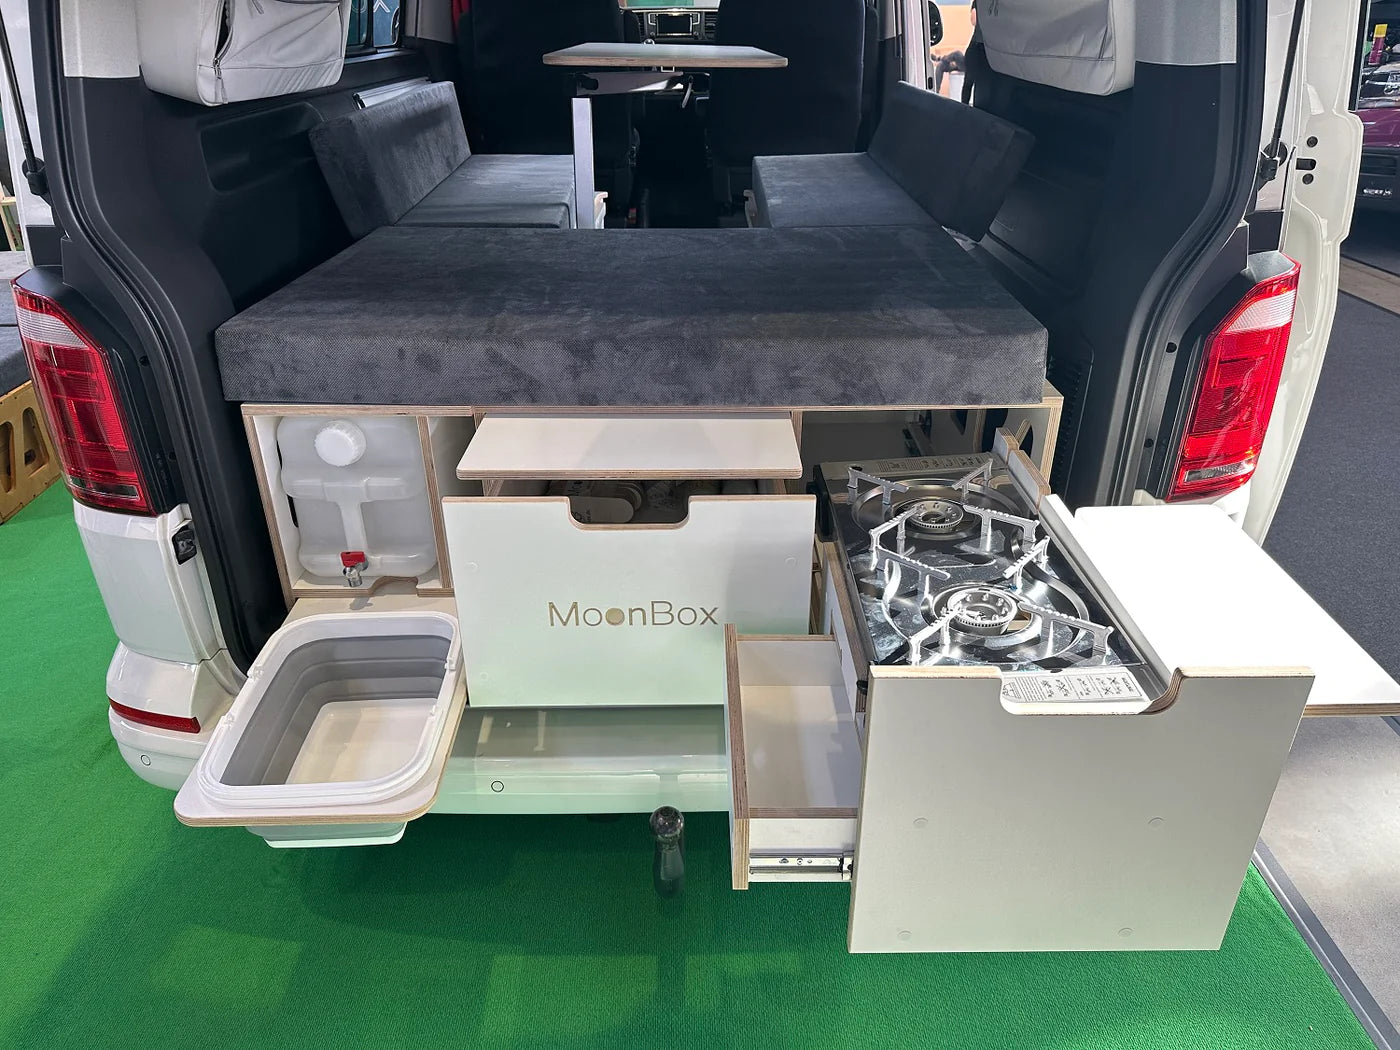 Billede af MoonBox 115 Modify Minibus/Transporter - Campervan modul til større biler - Hvid